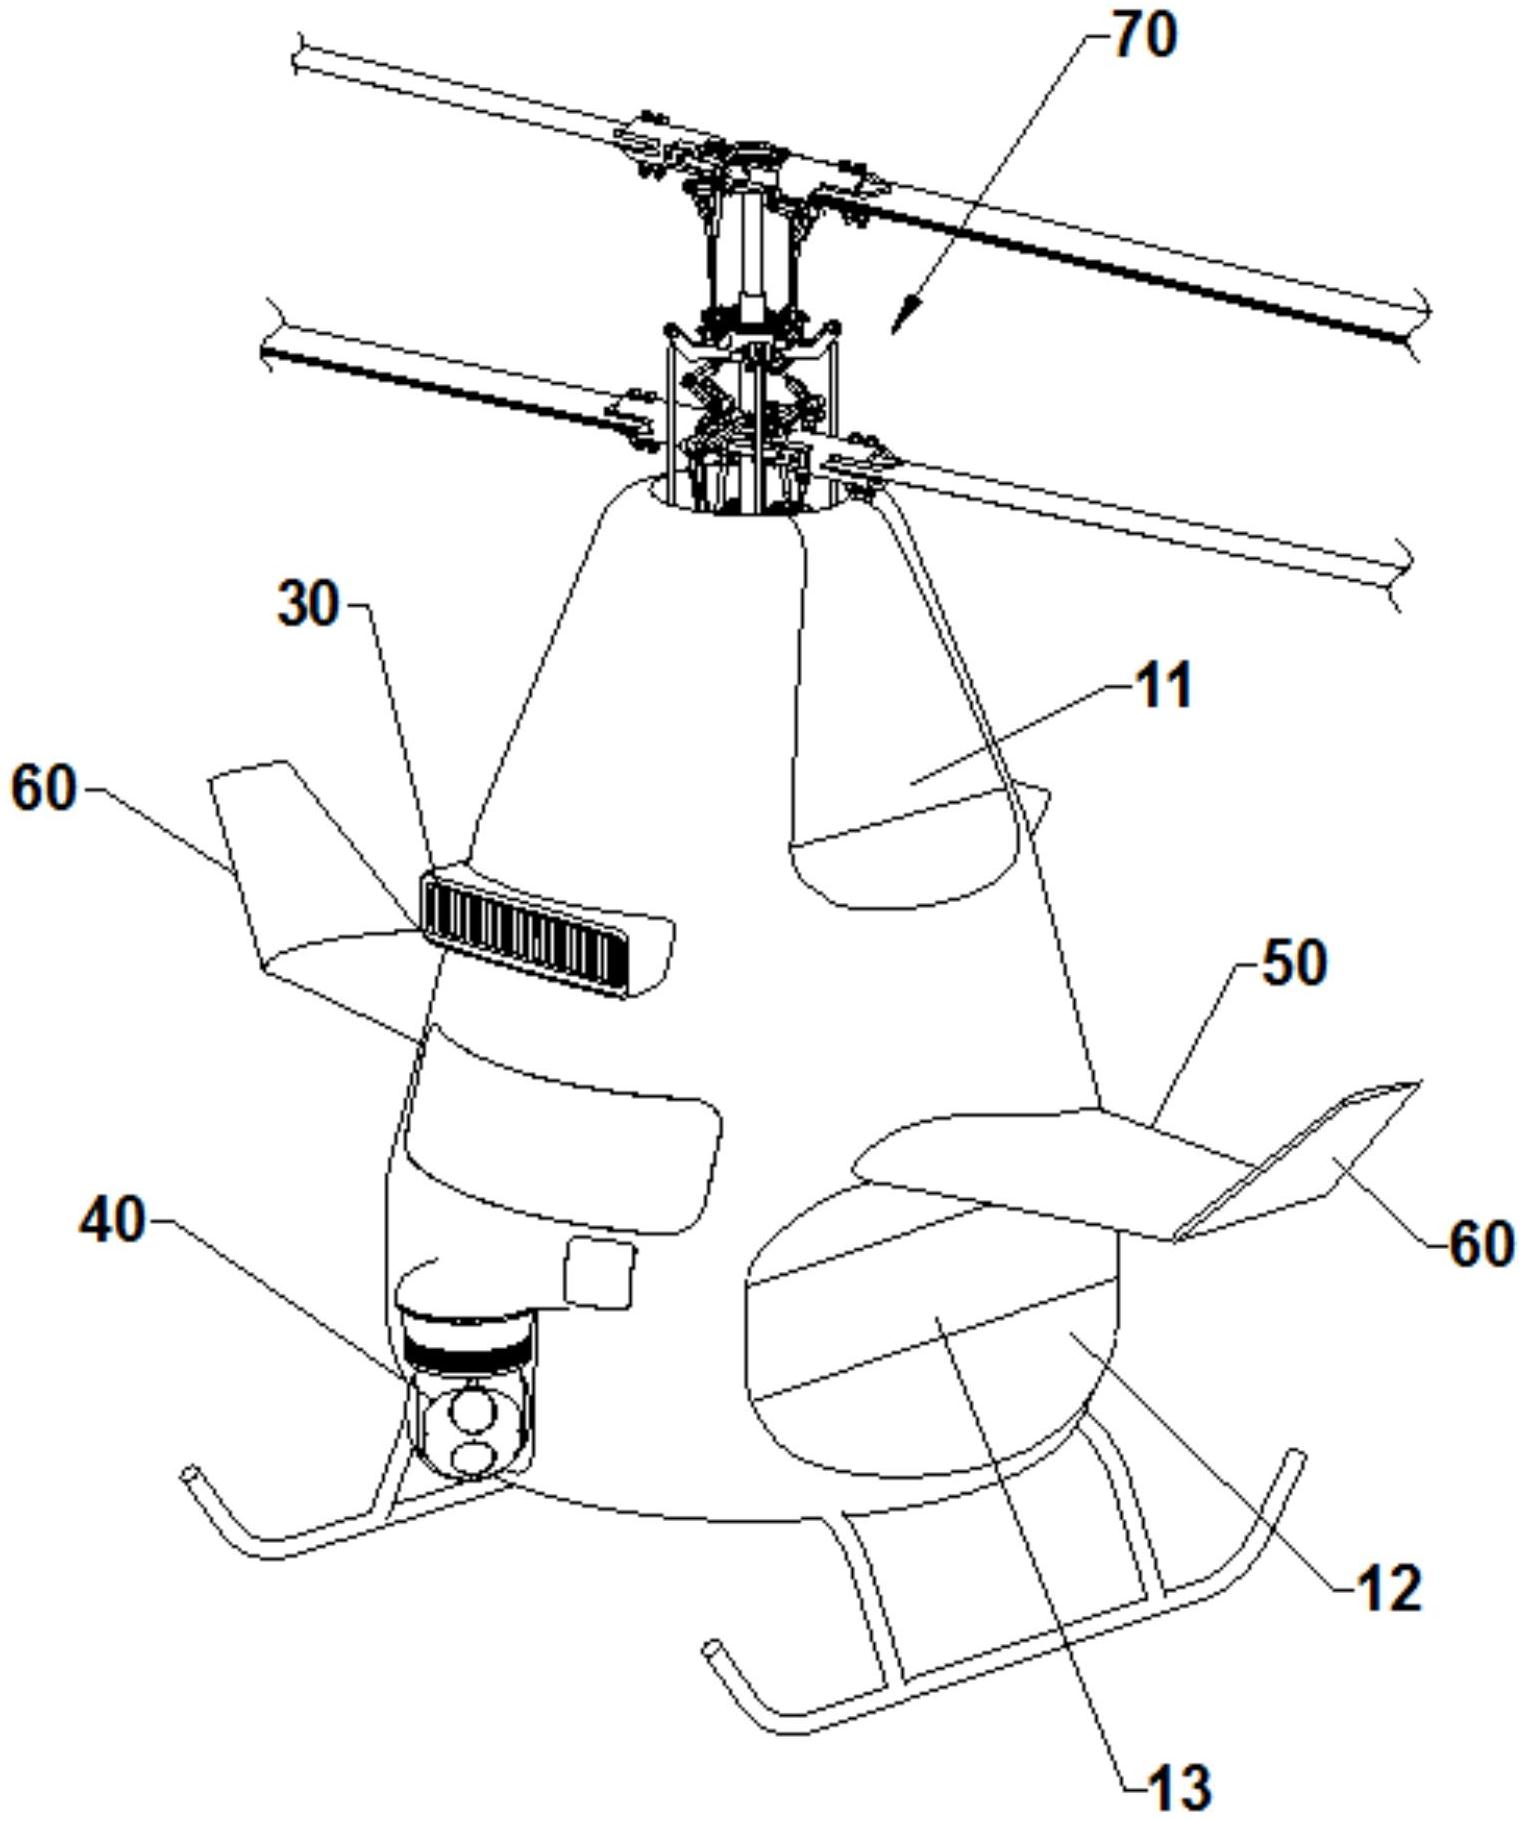 无尾桨直升机原理图片